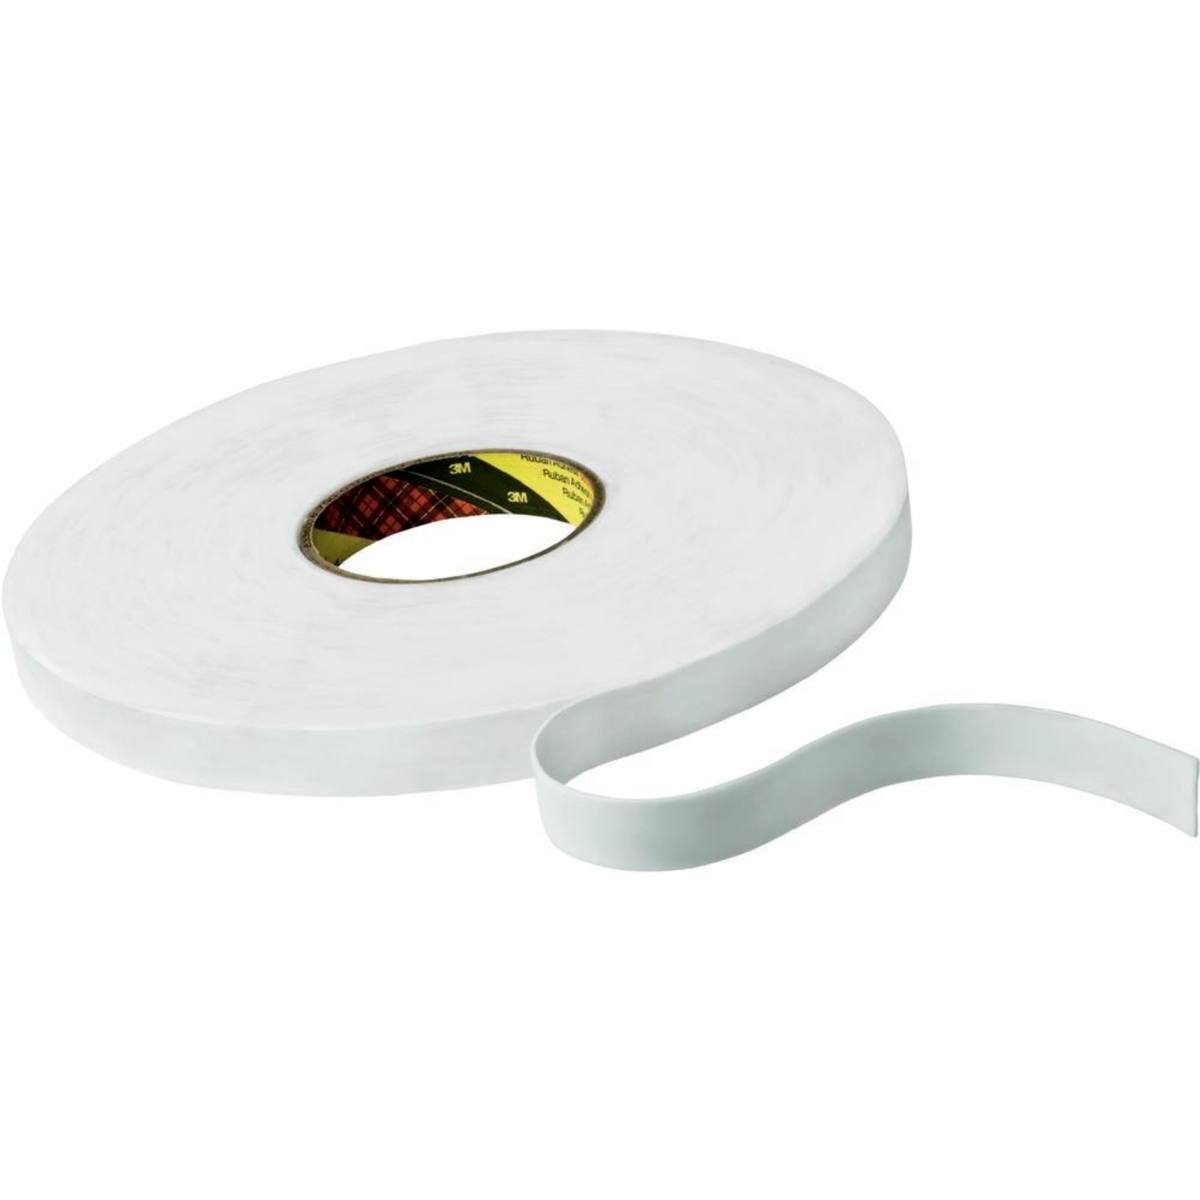 3M Dubbelzijdige PE-schuimtape met acrylaatlijm 9508W, wit, 25 mm x 66 m, 0,8 mm